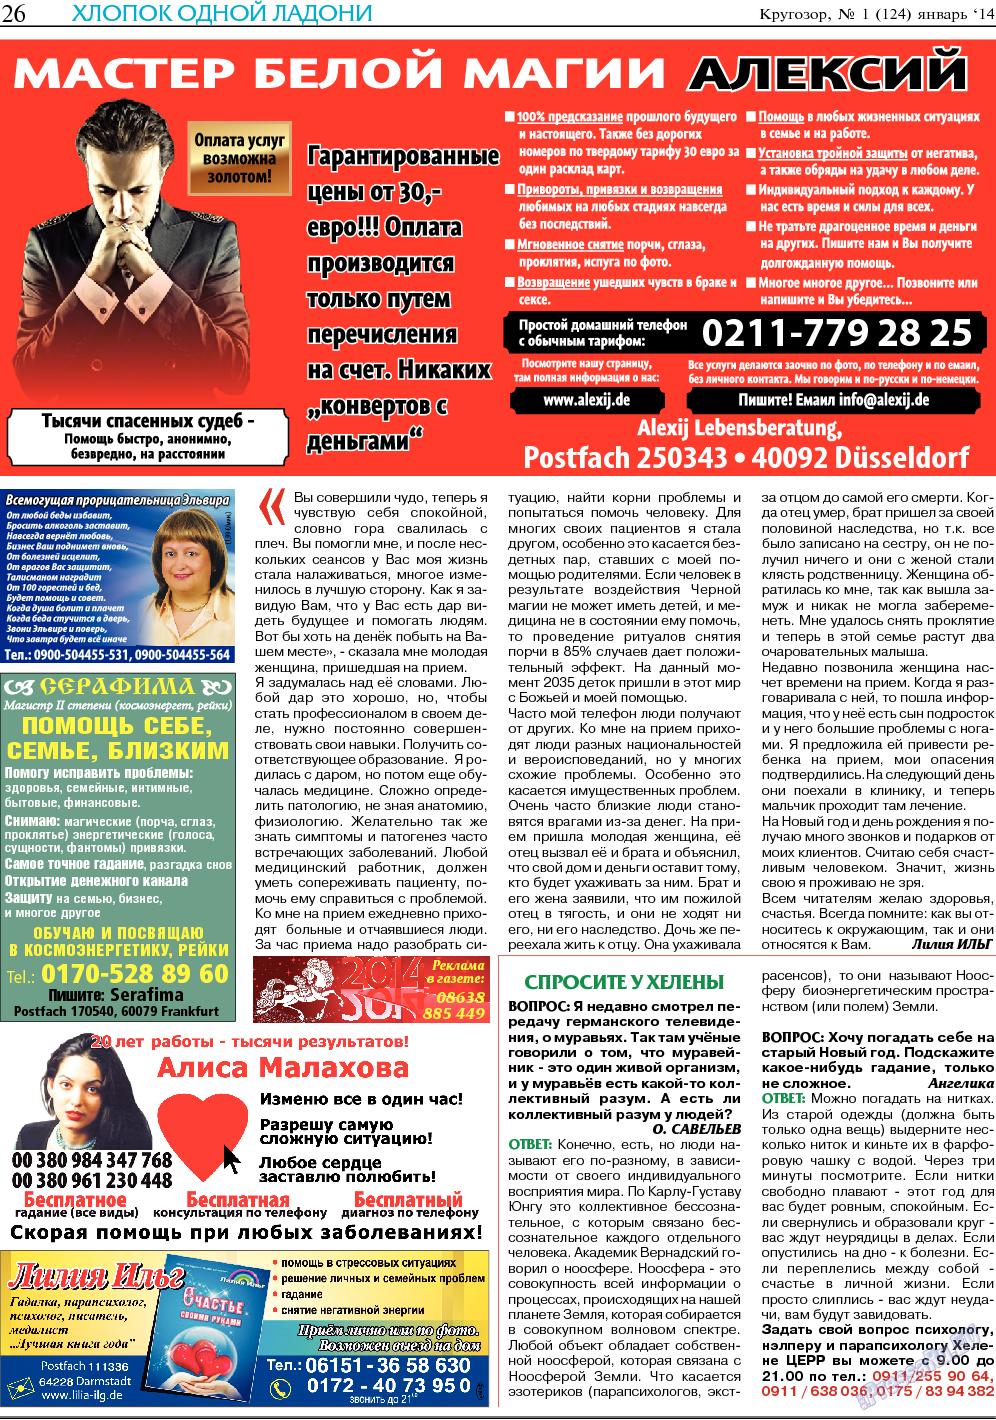 Кругозор, газета. 2014 №1 стр.26